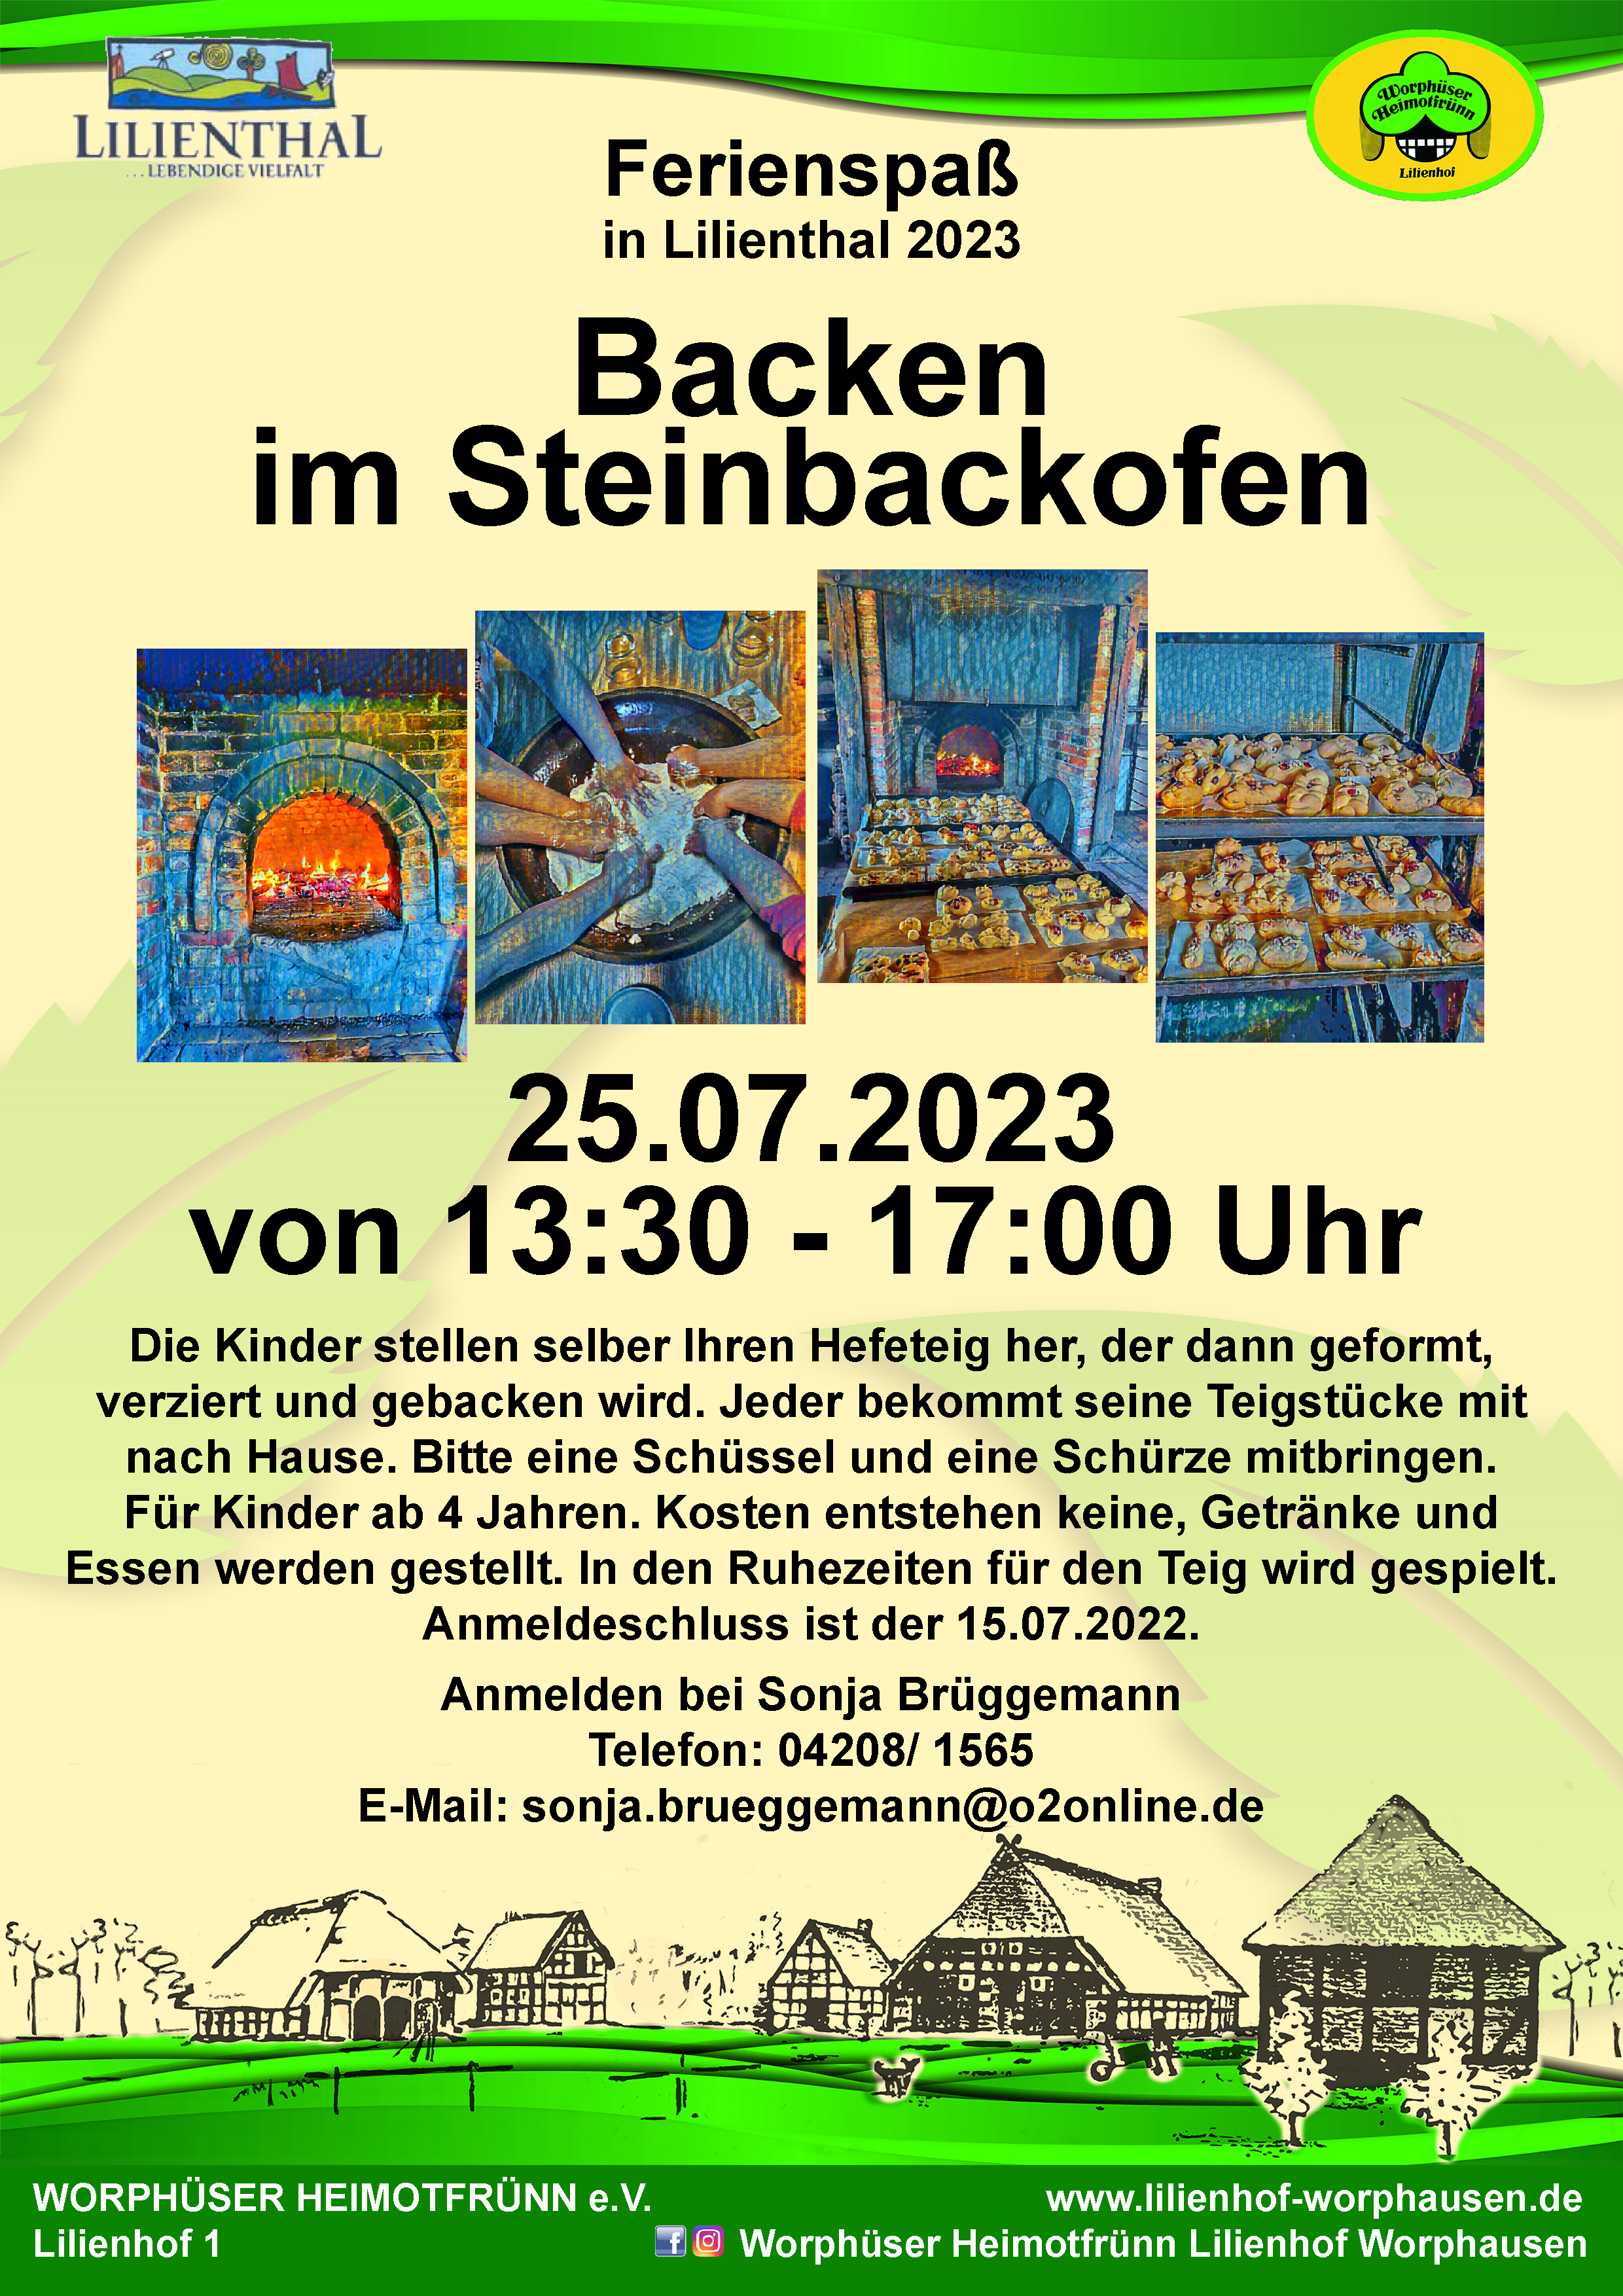 Backen im Steinbackofen Ferienspaß in Lilienthal 2023